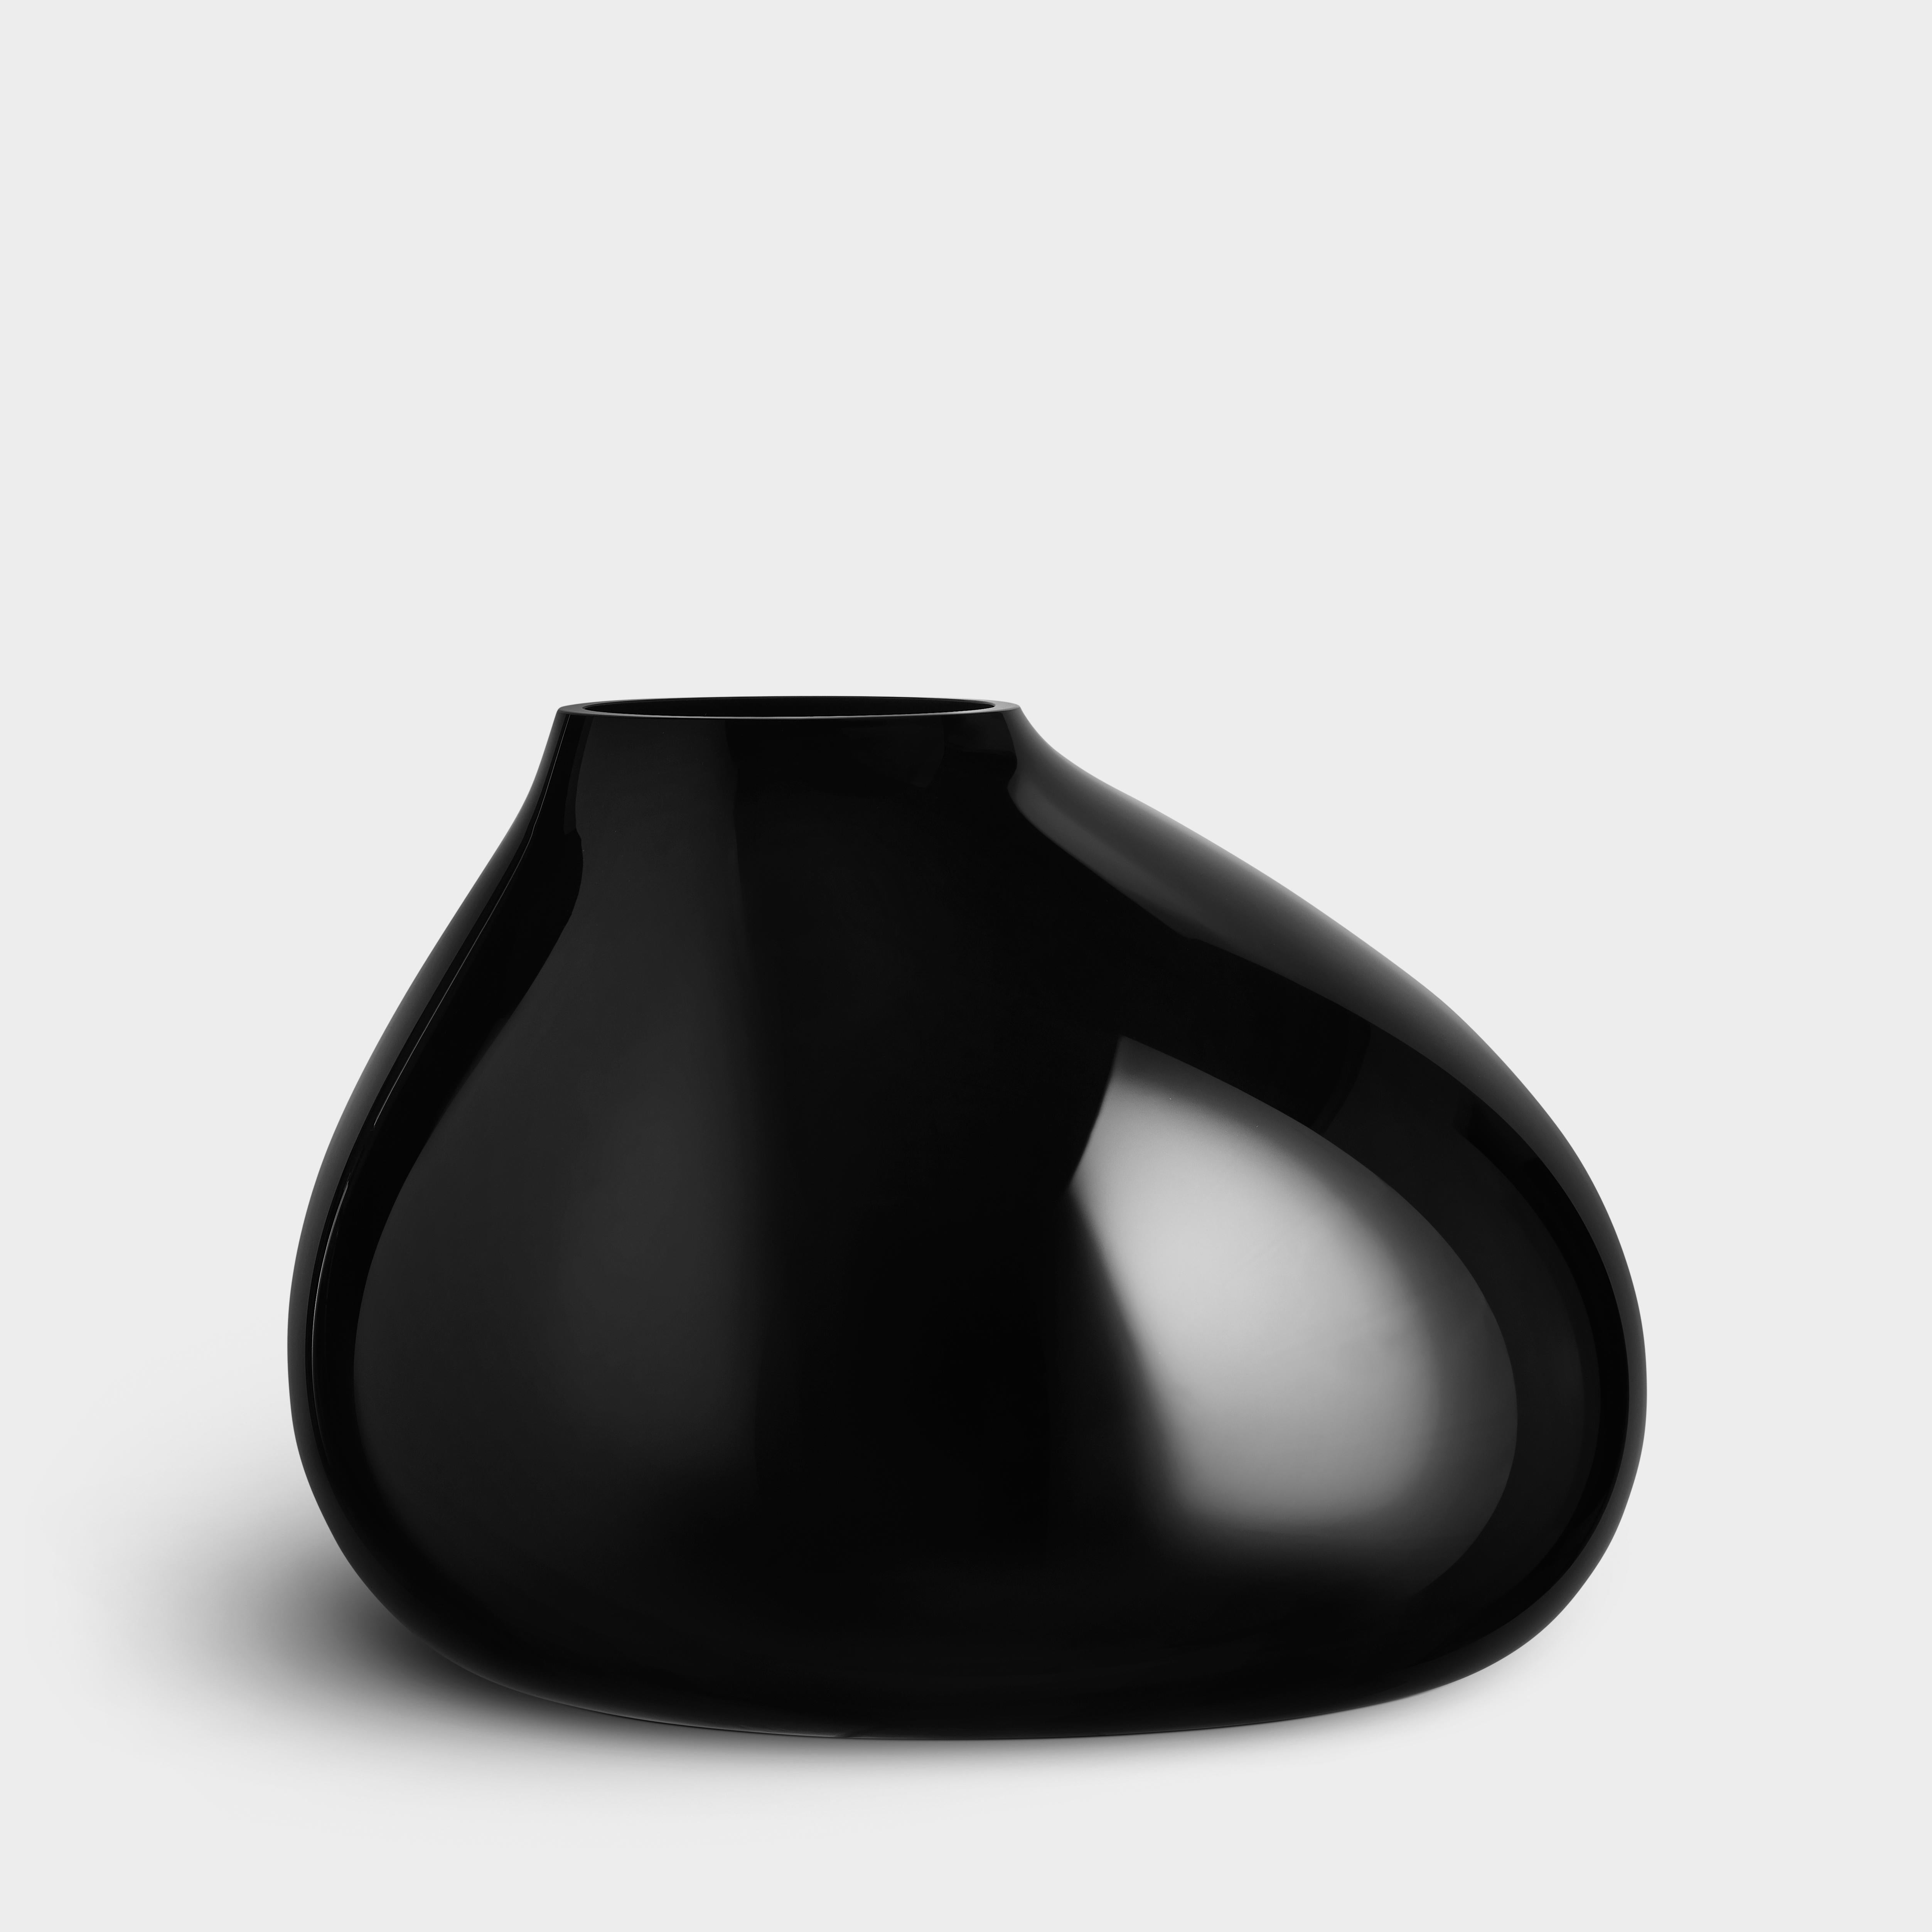 Ebon von Orrefors ist eine mundgeblasene Vase, die in Schweden hergestellt wird. Die Form entsteht aus einer Grundschablone, der der Glasbläser den letzten Schliff verleiht. Jede Vase wird daher innerhalb eines strengen Rahmens individuell